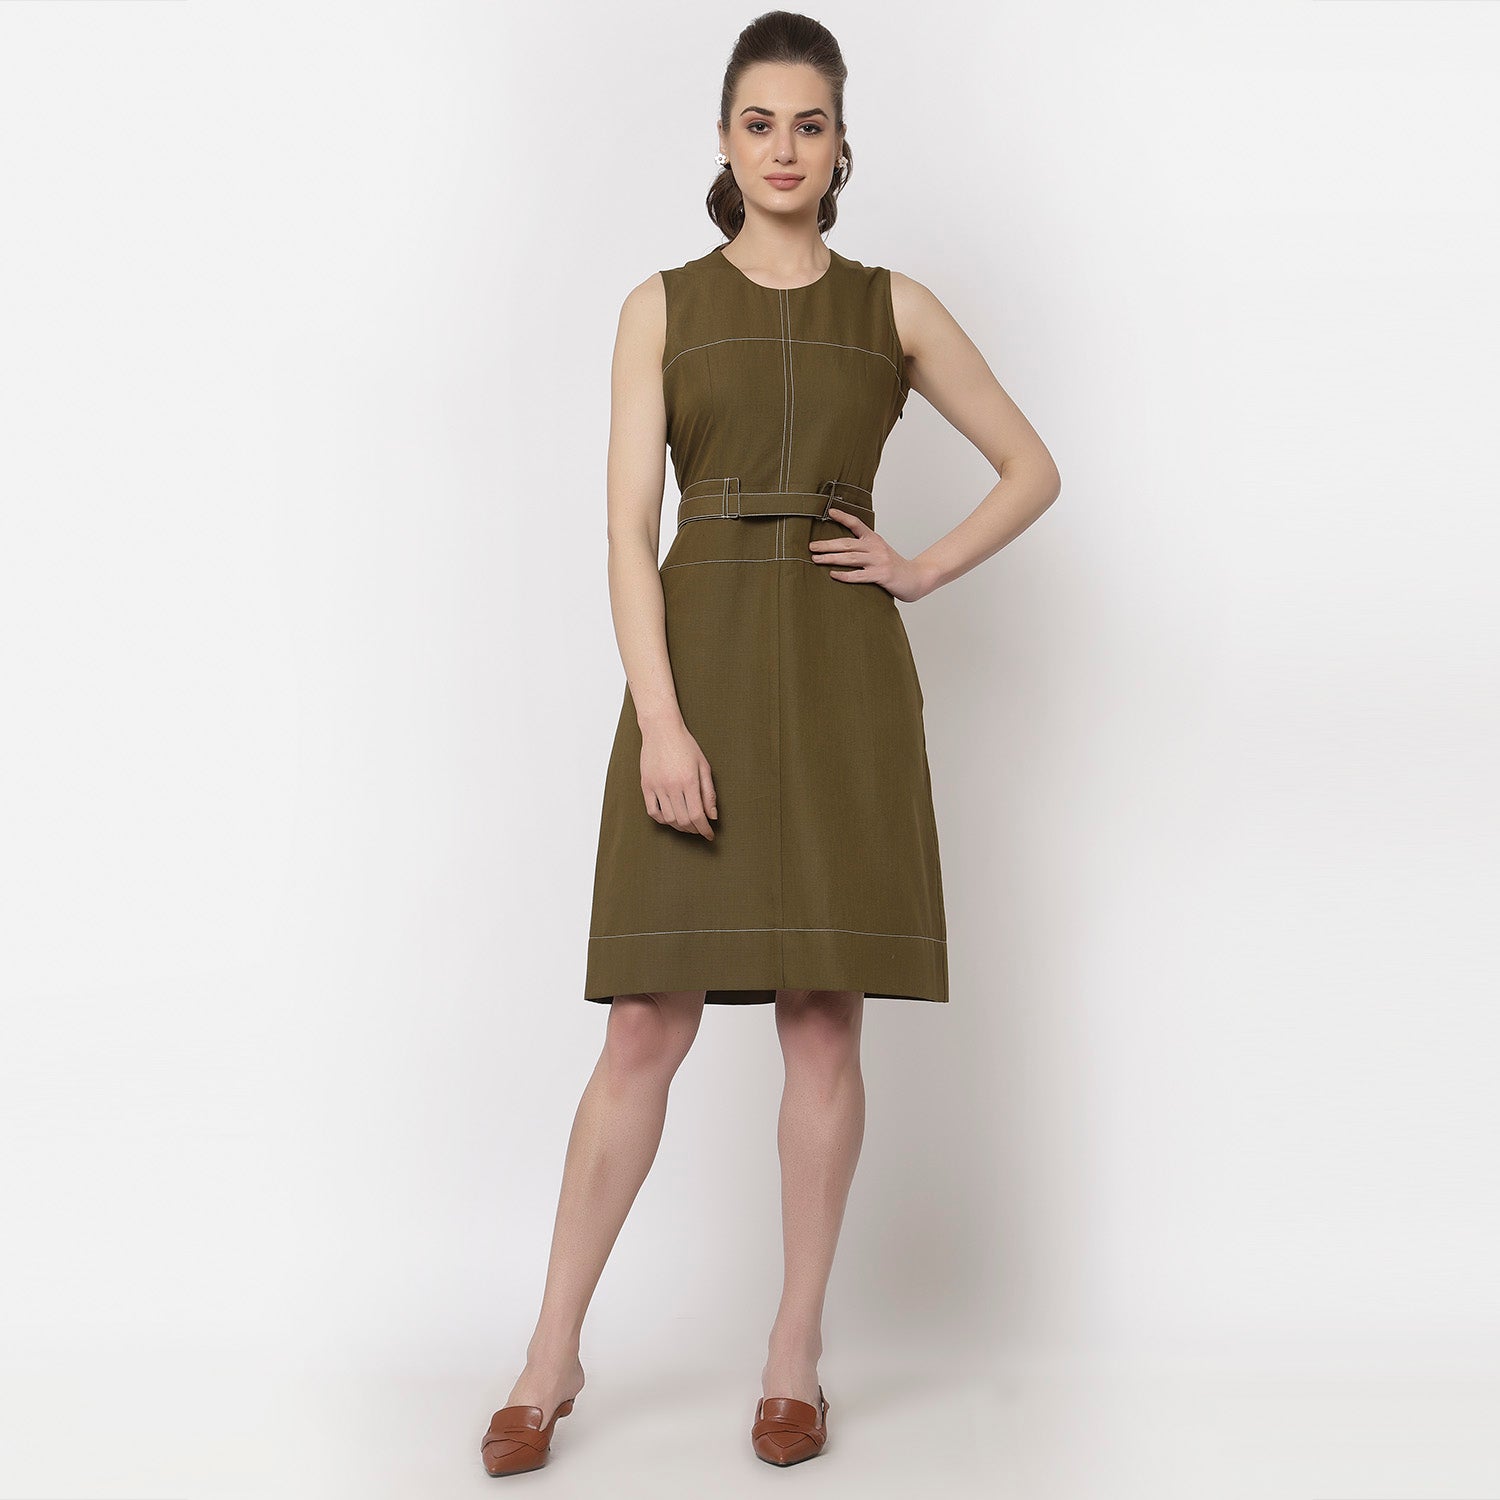 Olive sleeveless dress with belt